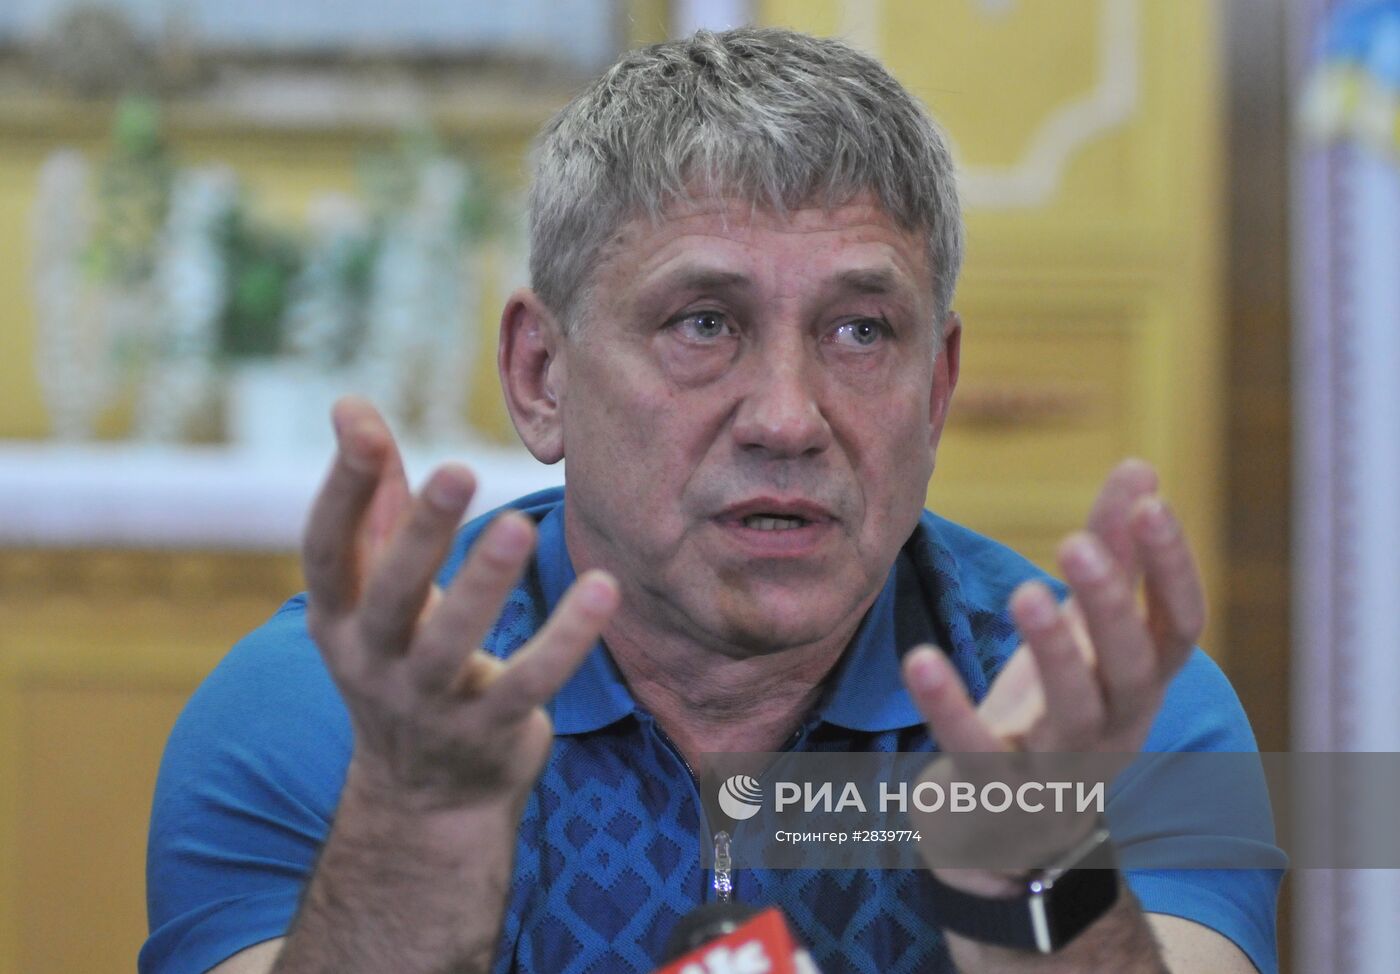 Министр угольной промышленности Украины Игорь Насалик